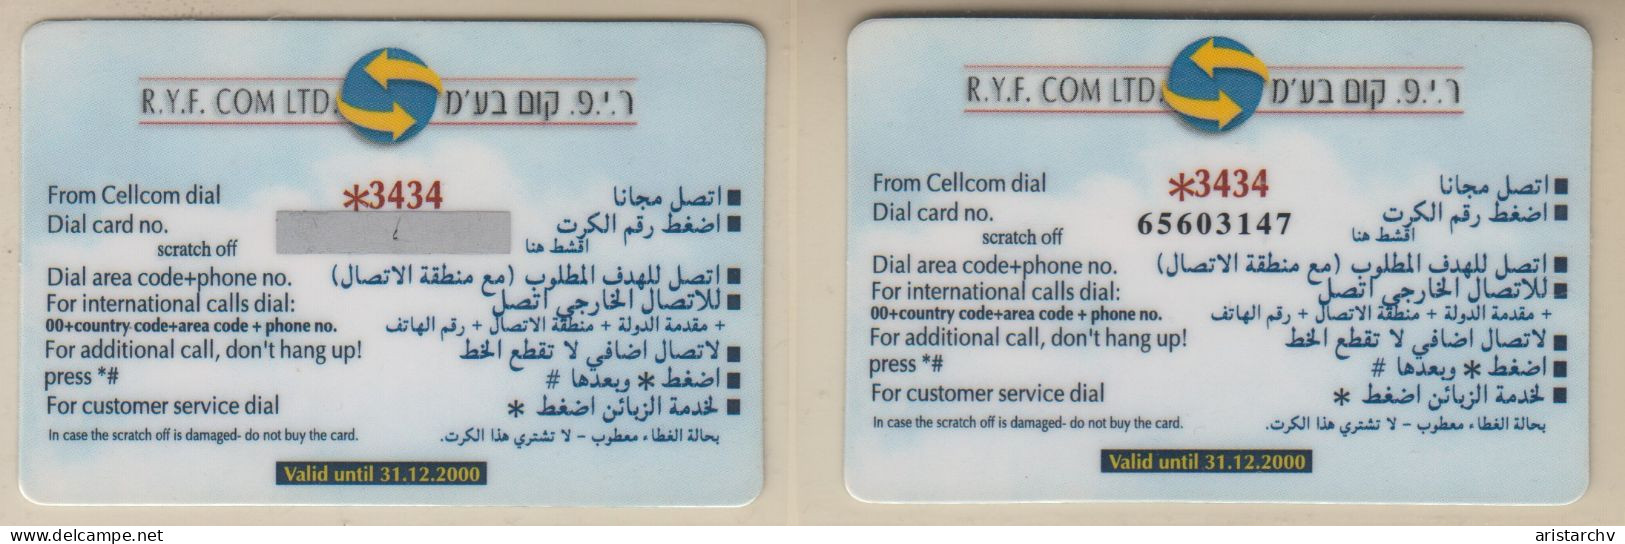 ISRAEL 2000 R.Y.F. COM AL AQSA MOSQUE EGYPT & JORDAN 300 UNITS 2 CARDS - Israel